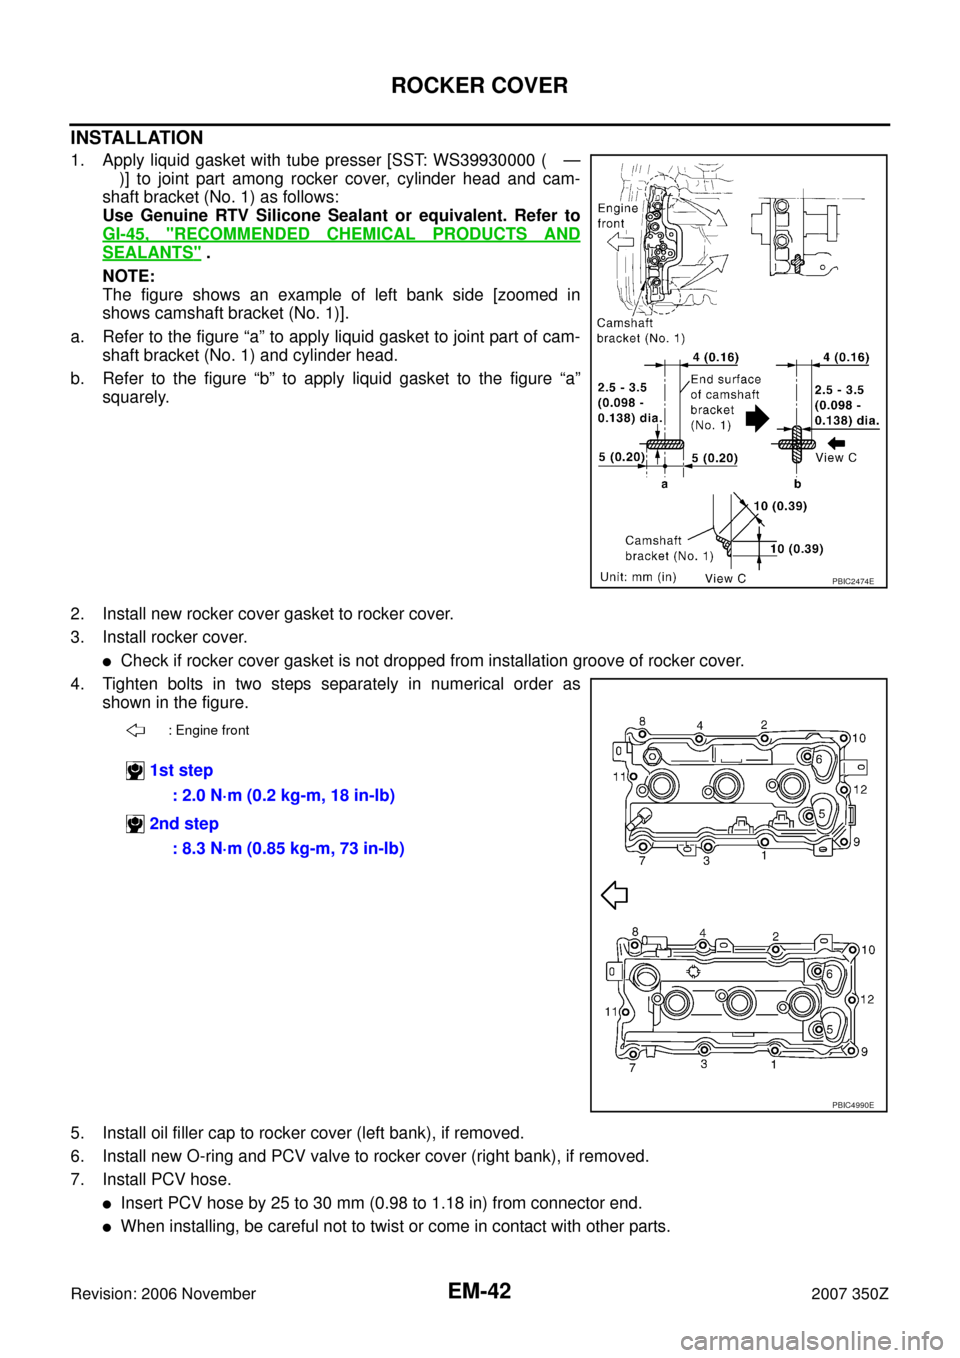 NISSAN 350Z 2007 Z33 Engine Mechanical Workshop Manual EM-42
ROCKER COVER
Revision: 2006 November2007 350Z
INSTALLATION
1. Apply liquid gasket with tube presser [SST: WS39930000 ( —
)] to joint part among rocker cover, cylinder head and cam-
shaft brack